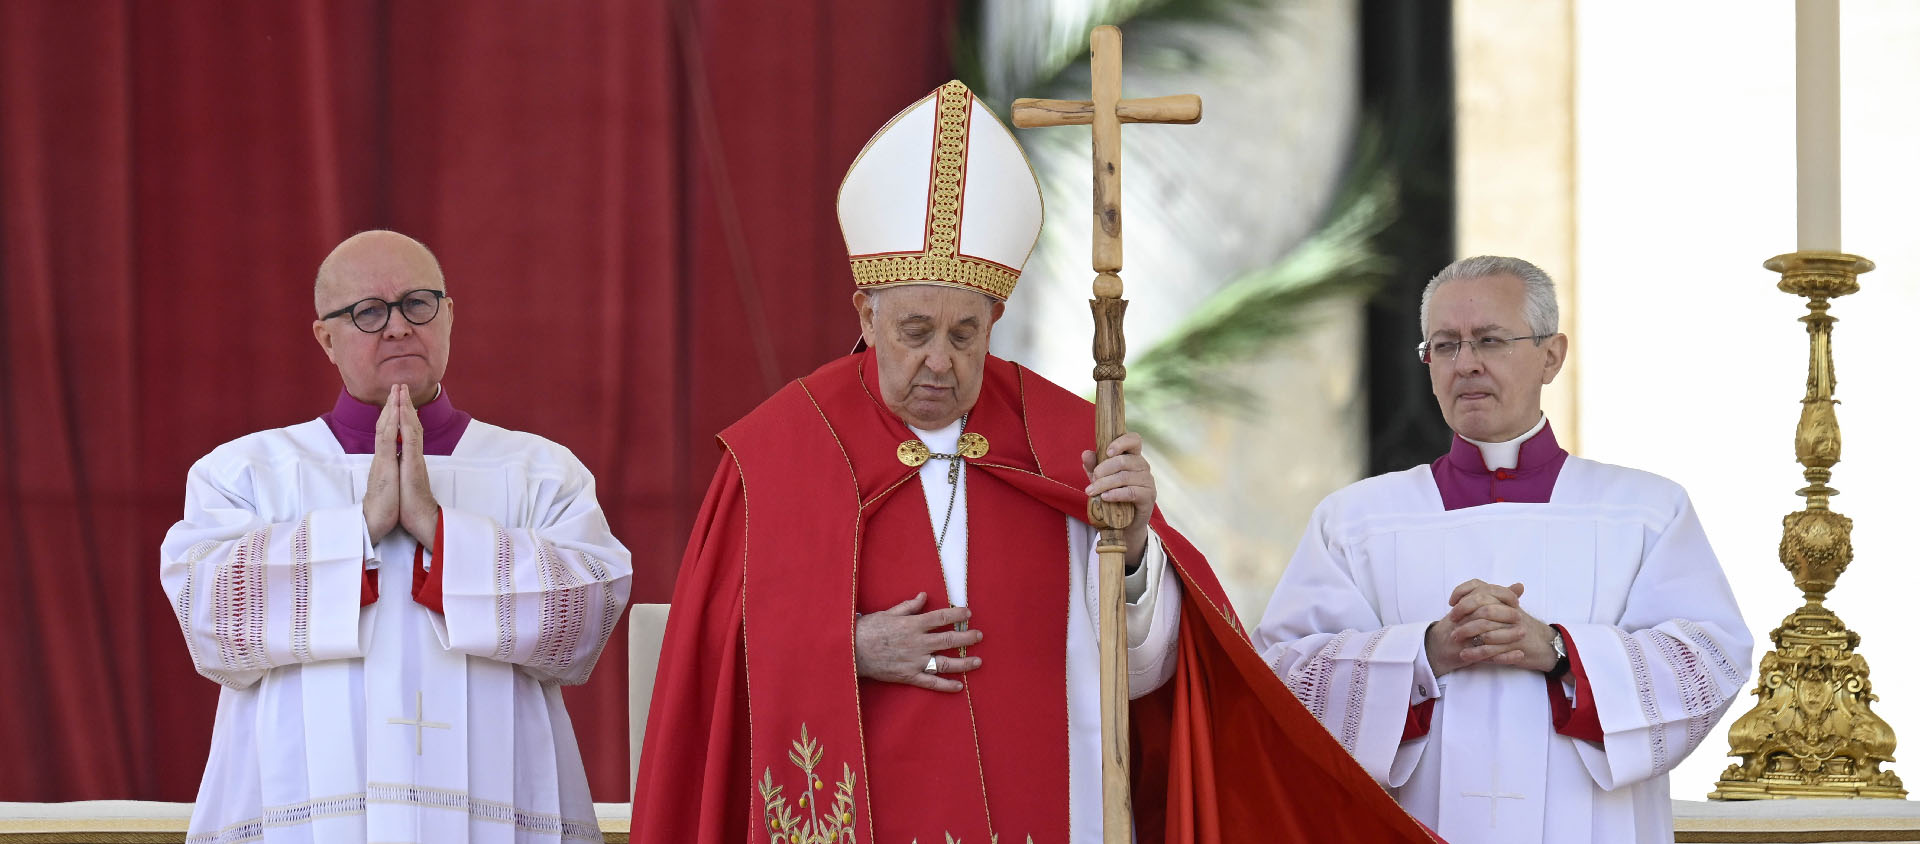 Contre toute attente, le pape n’a pas prononcé son homélie, laissant la place Saint-Pierre dans un long silence avant que le cours de la liturgie ne reprenne | © Vatican Media